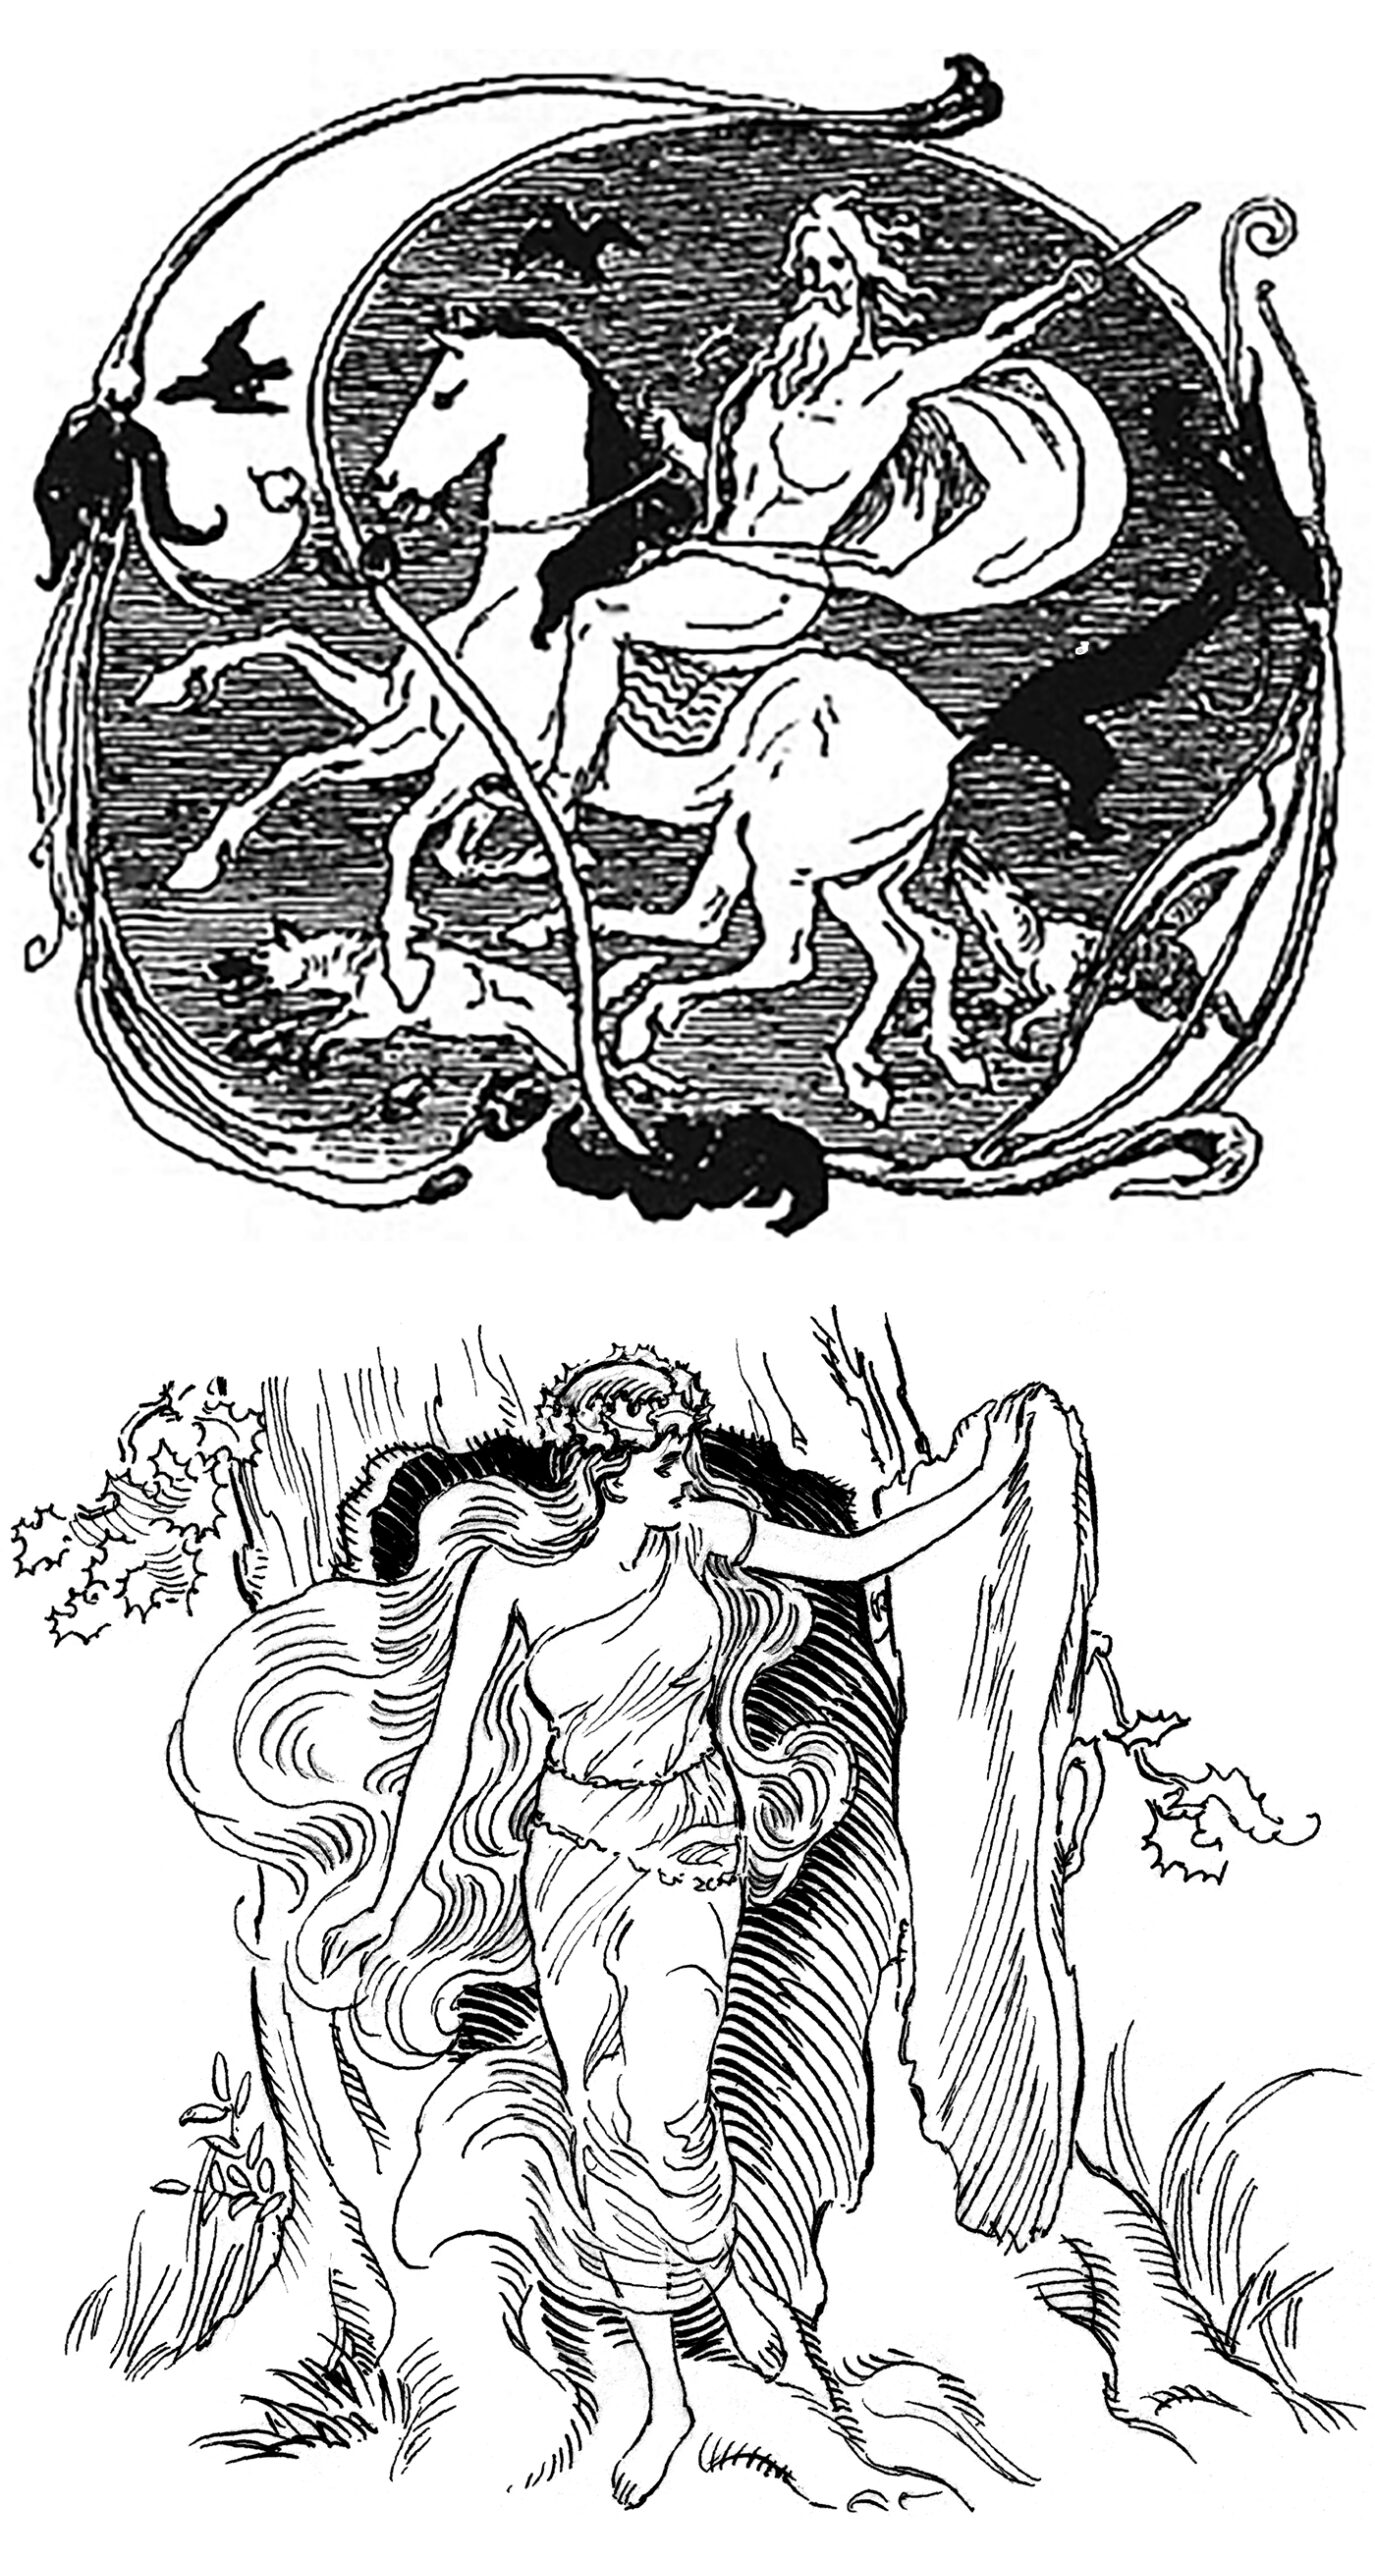 Øverst: Odin med den ottebenede hest, Sleipner, de to ravne Hugin og Munin, og de to ulve, Gere og Freke. Nederst: Dryade (Pearson_Scott_Foresman)